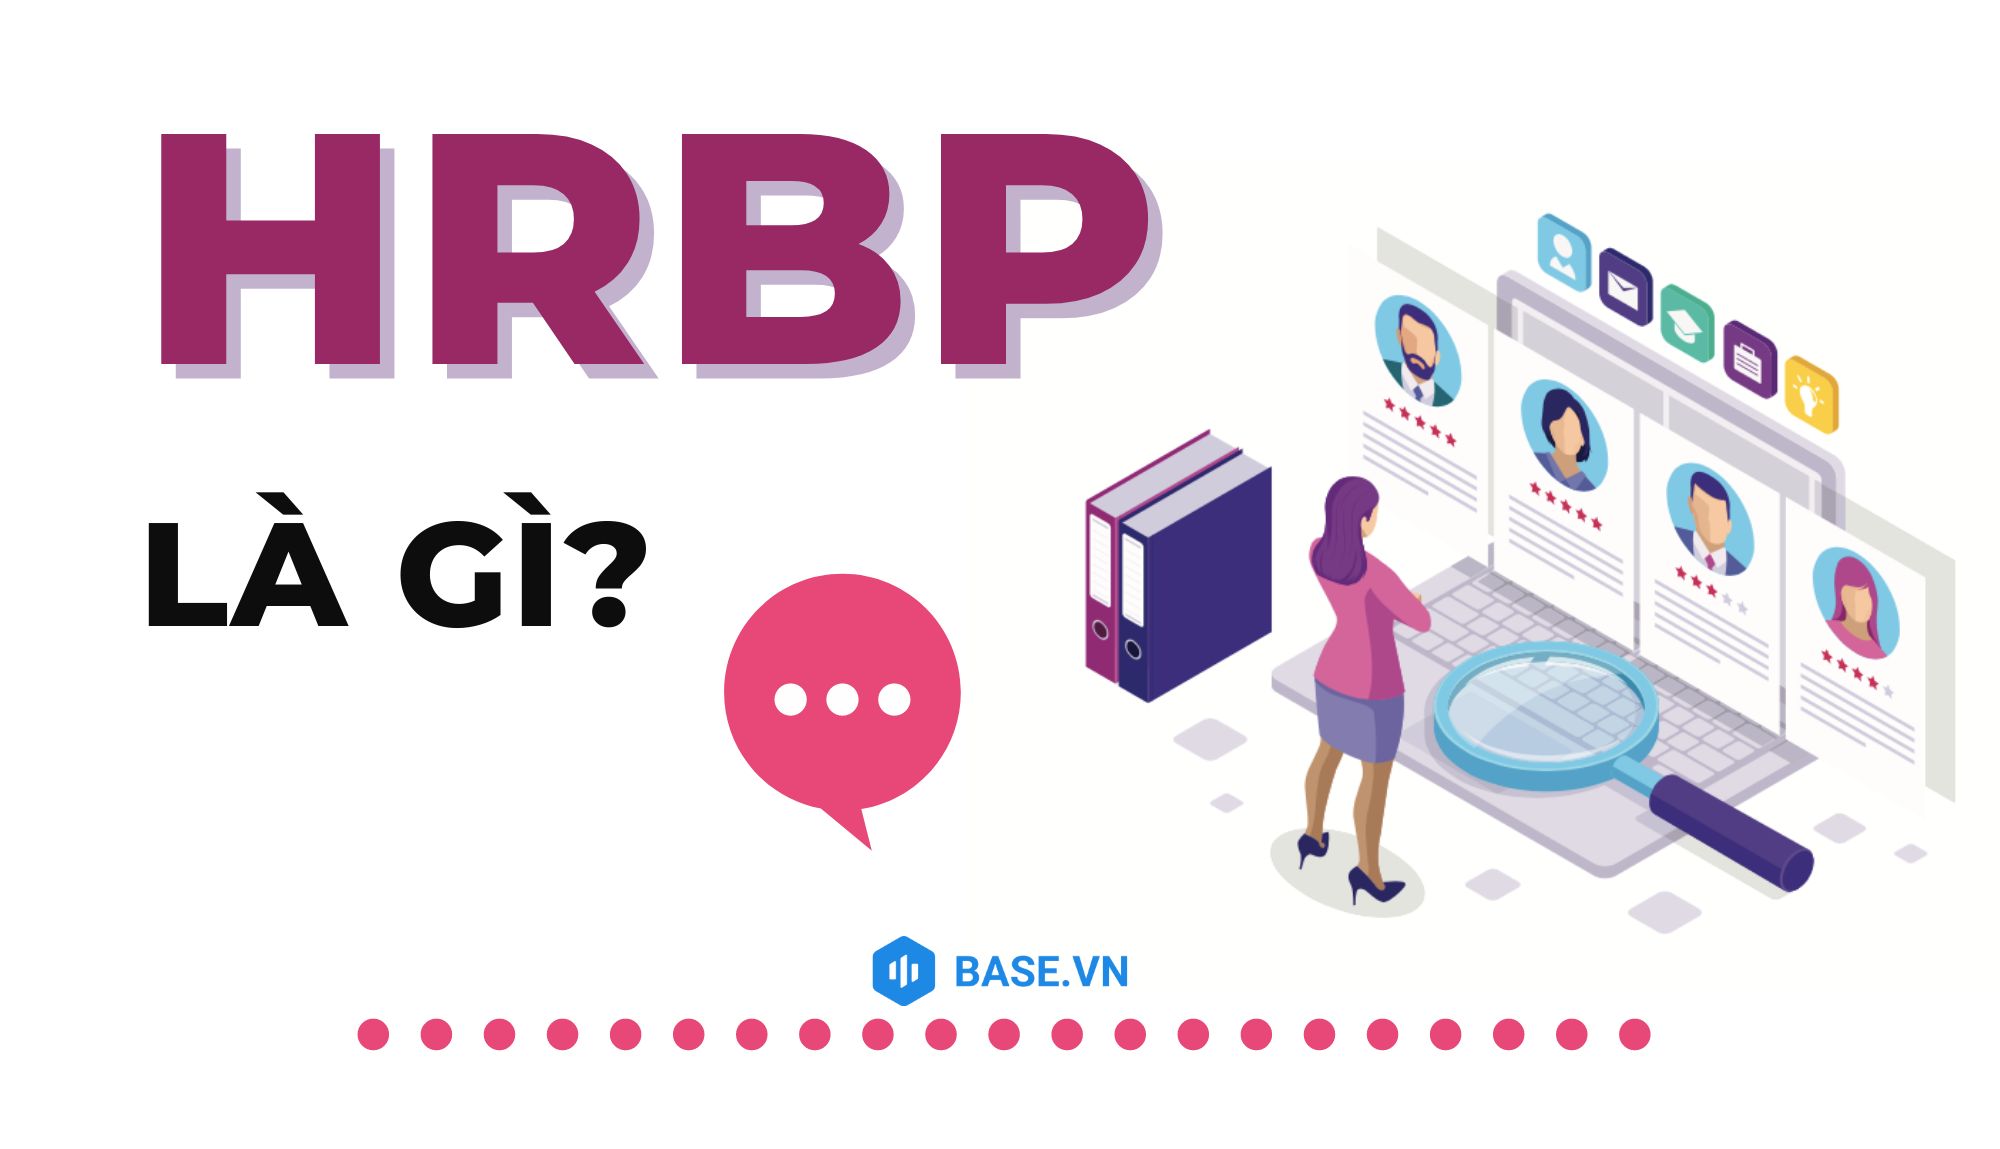 Tìm hiểu hrbp là viết tắt của từ gì và vai trò của người HRBP trong doanh nghiệp